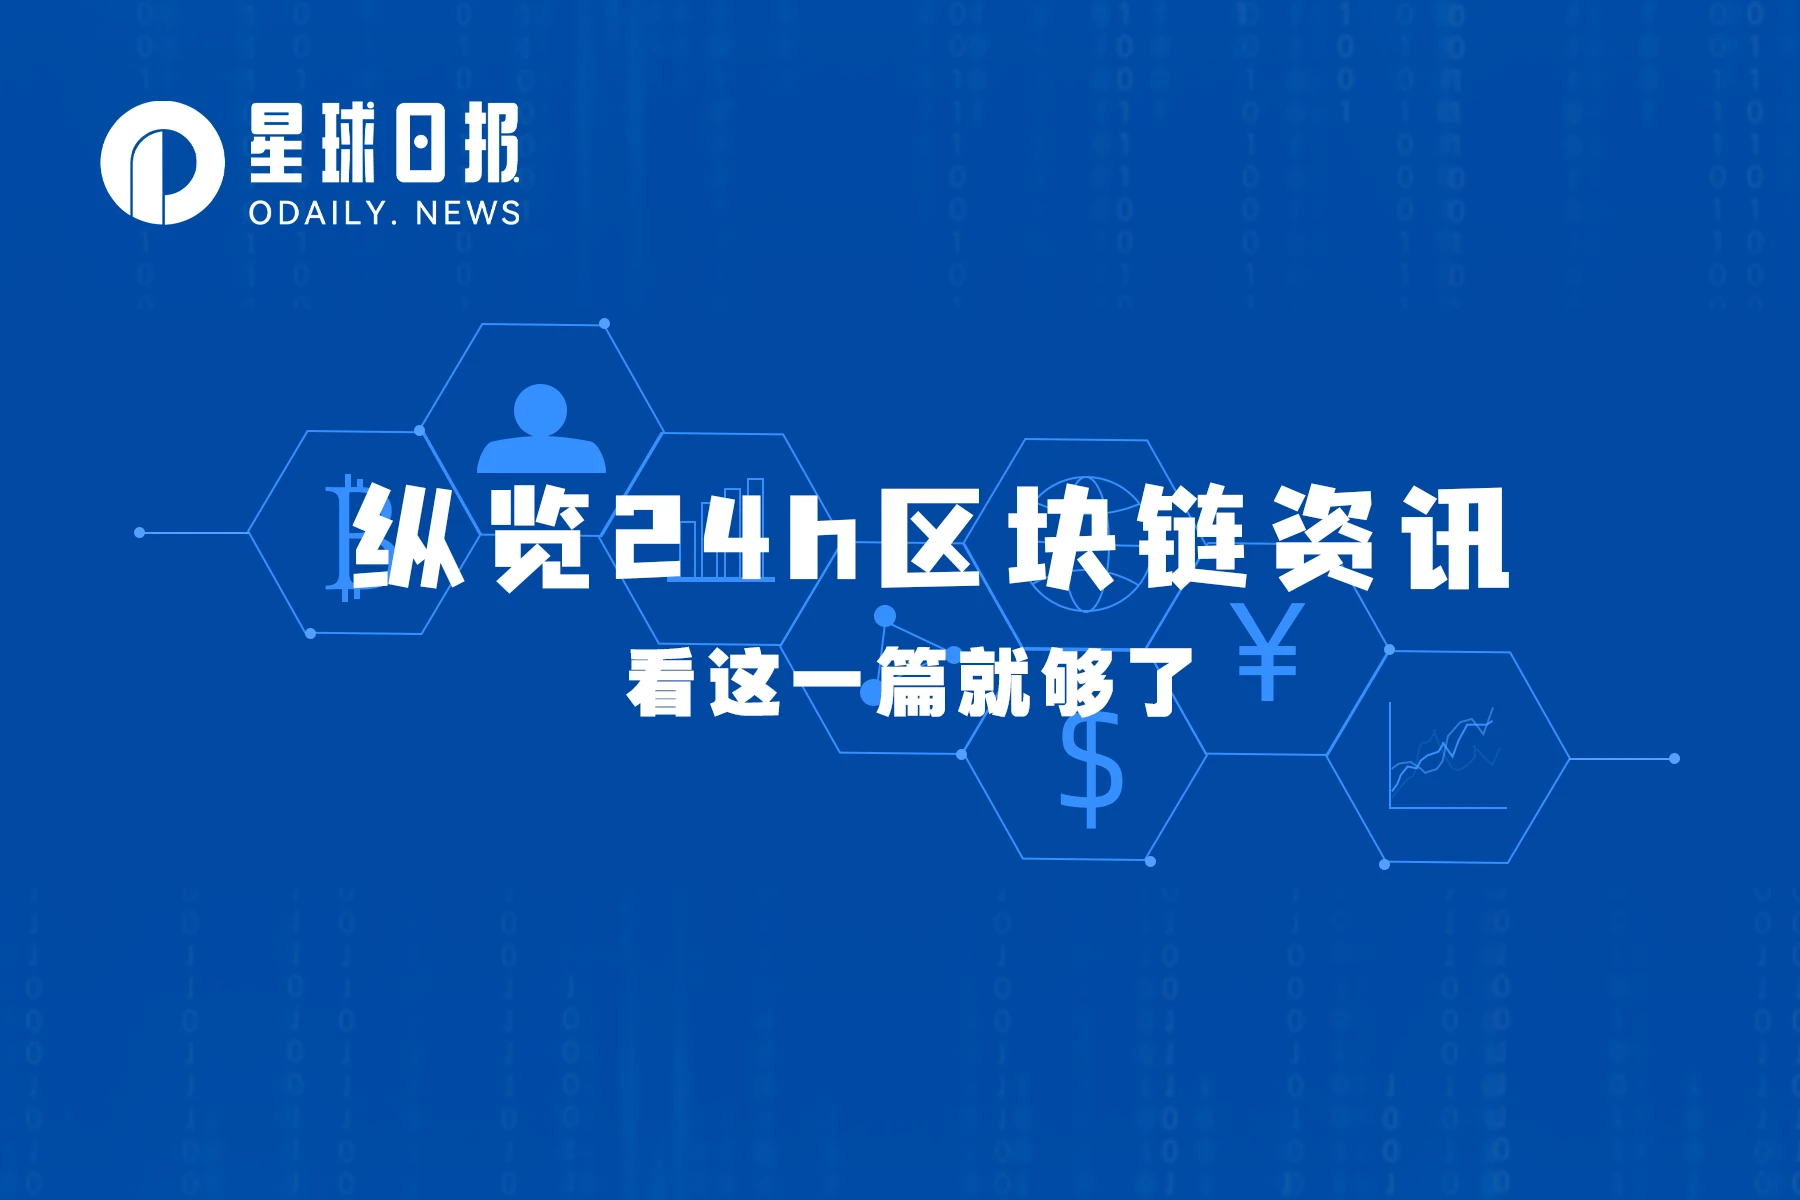 星球日报 | 以太坊将启动公共提款测试网Zhejiang； 特斯拉去年因BTC减值损失2.04亿美元（2月1日）